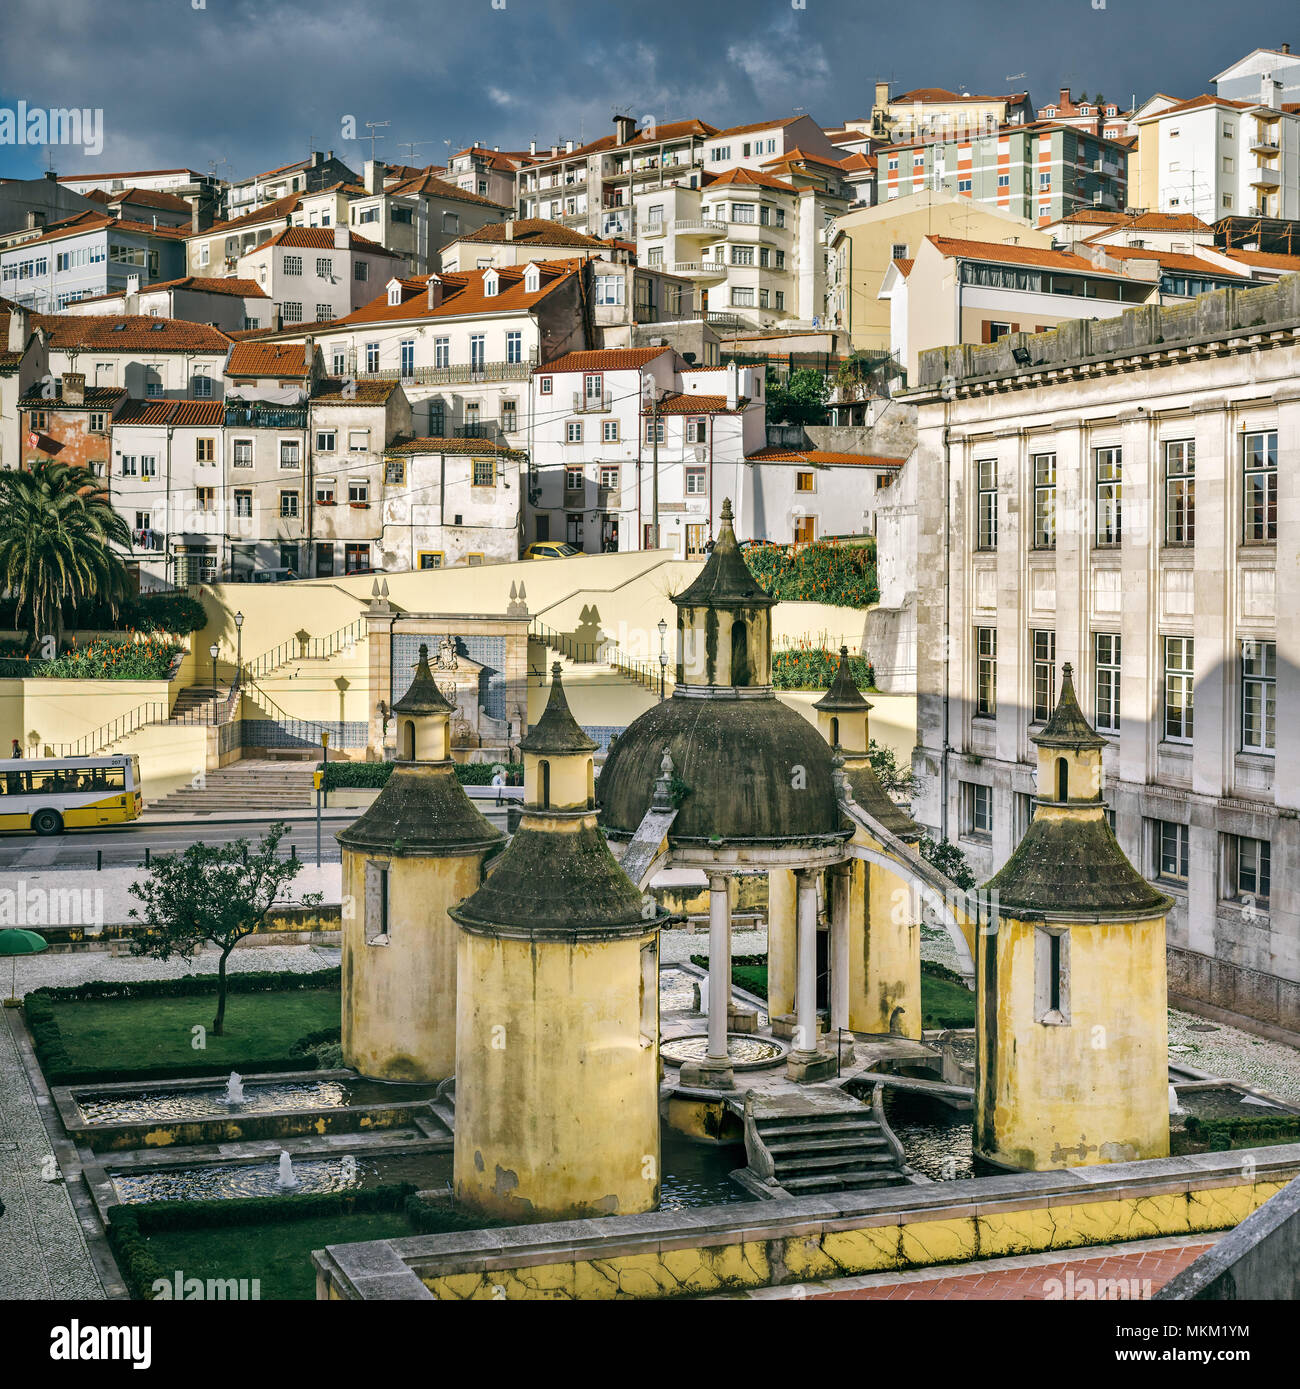 Vista de cidade hi-res stock photography and images - Alamy